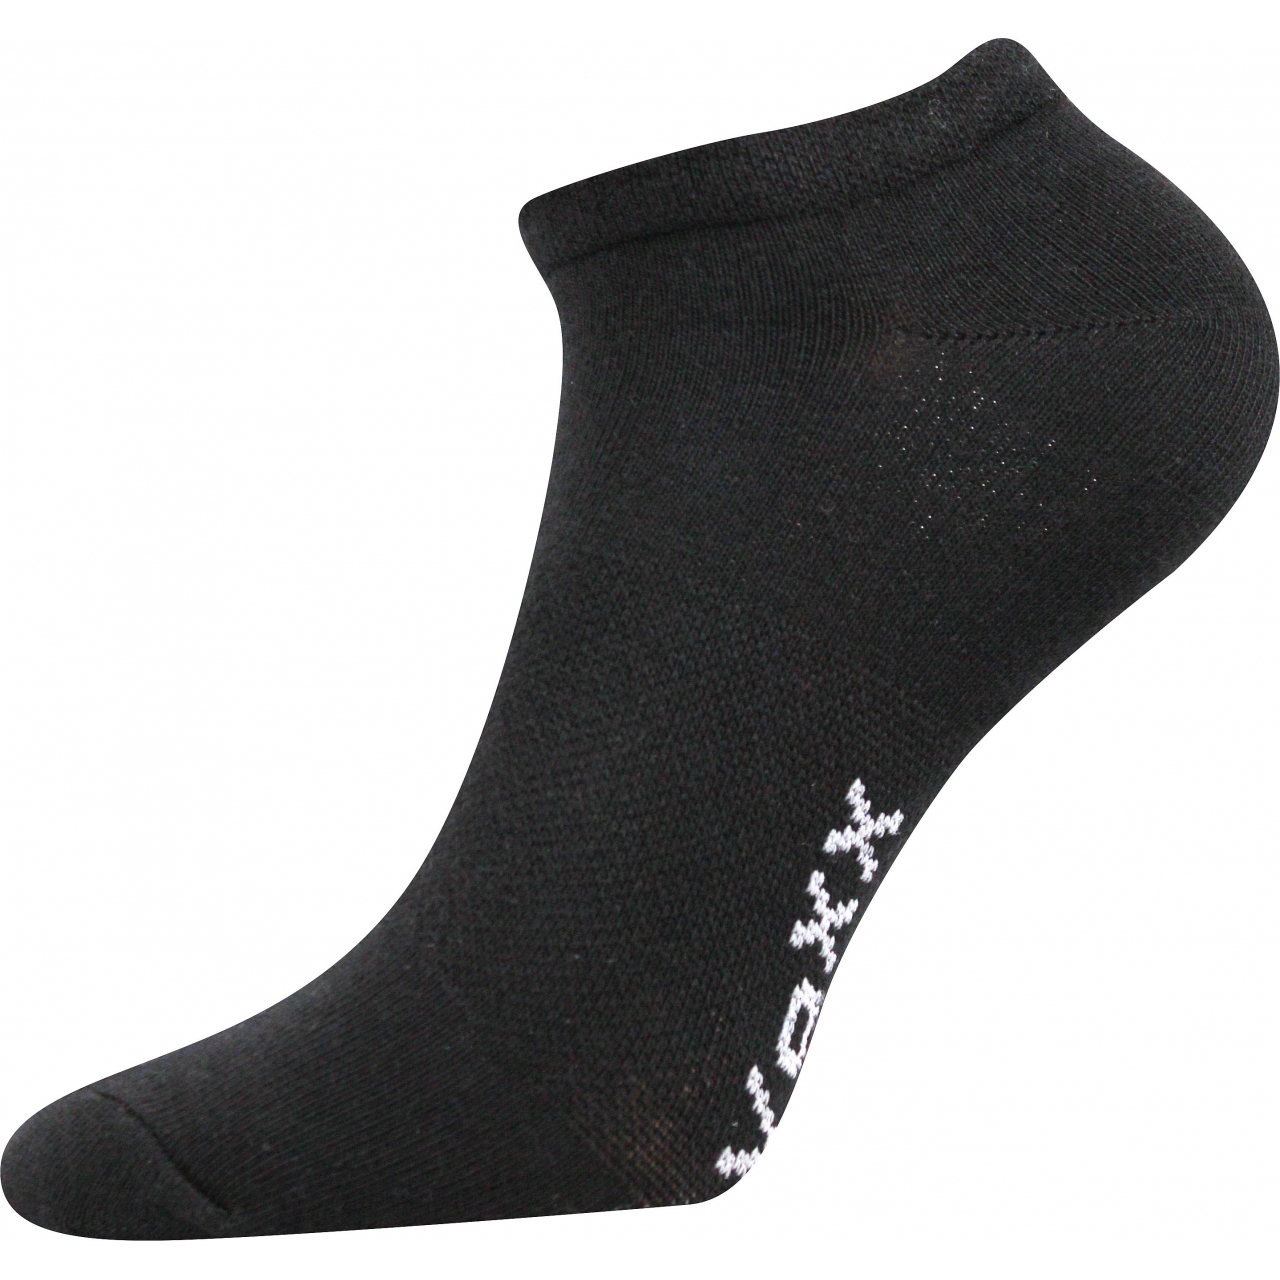 Ponožky unisex Voxx Rex 00 - černé, 39-42